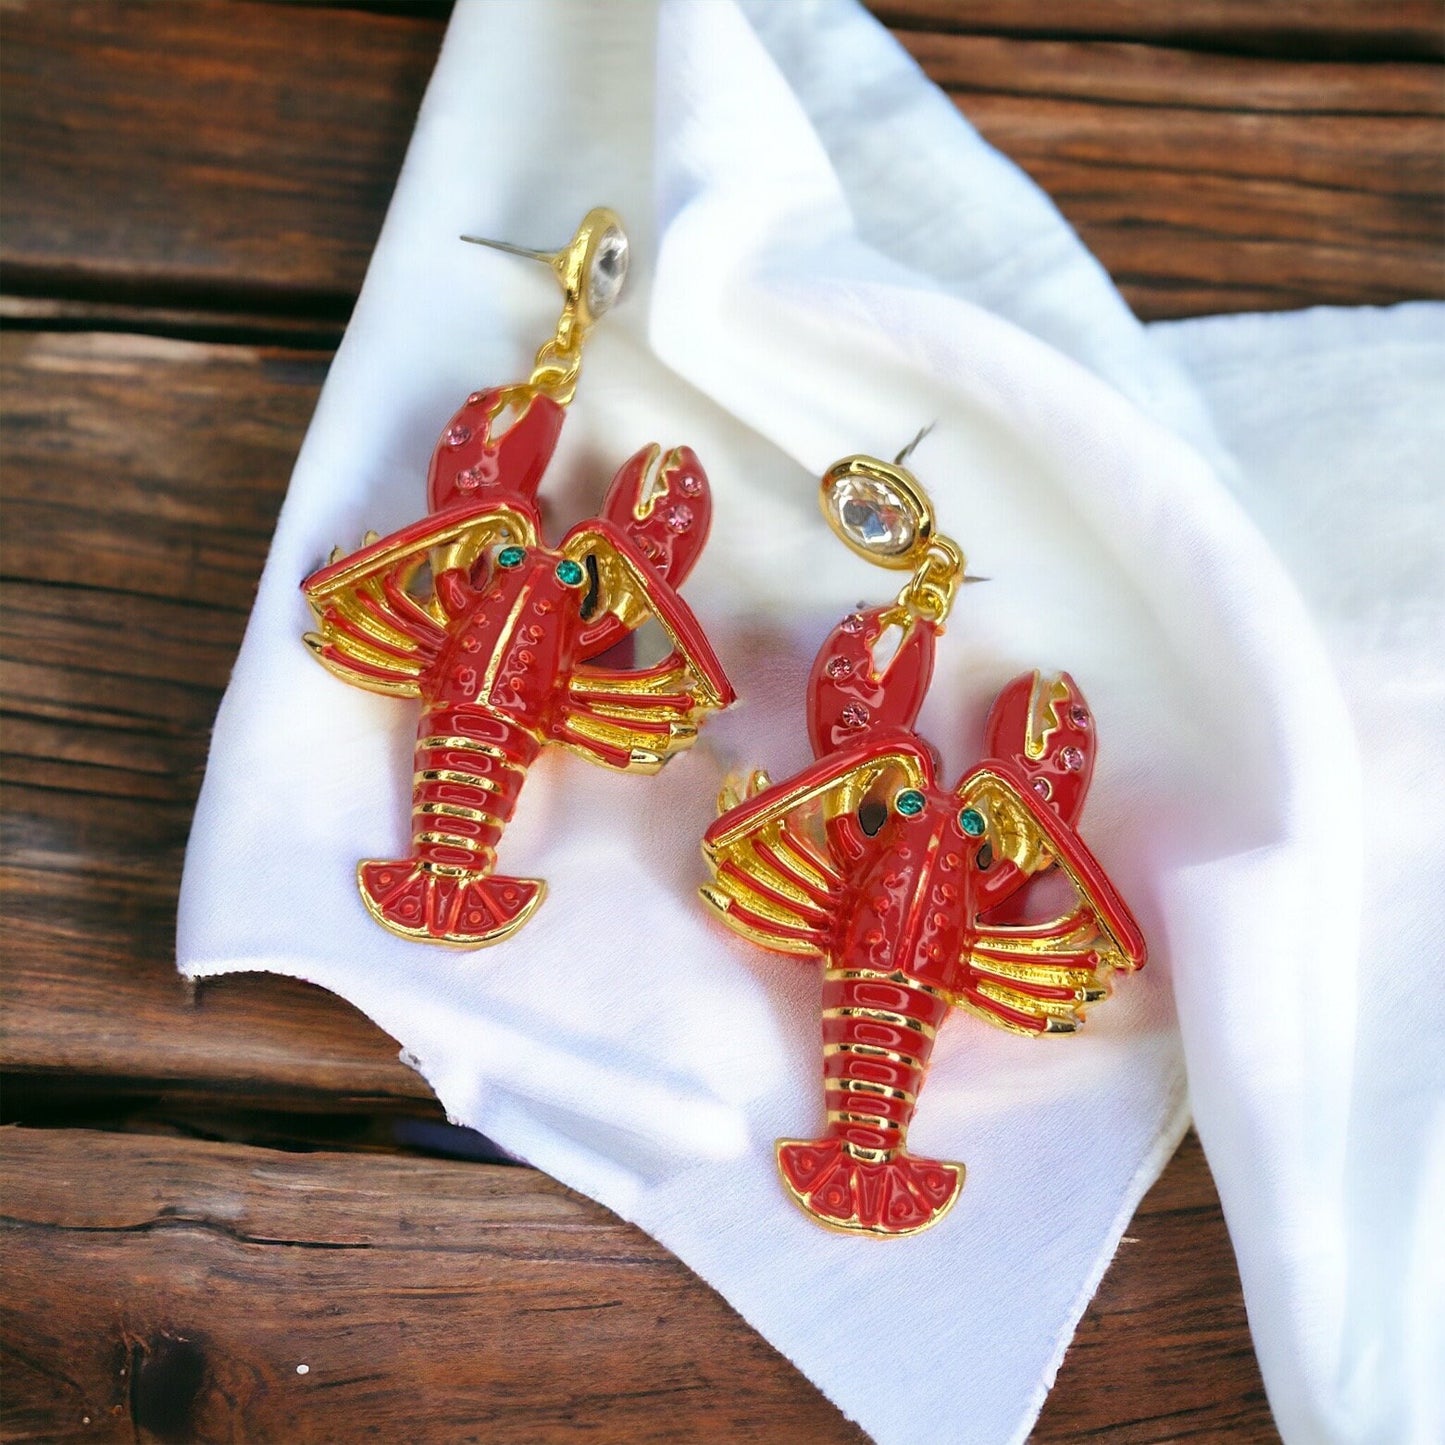 Crawfish Earrings - Rhinestone Earrings, Mardi Gras, New Orleans, Lobster Earrings, Mardi Gras Accessories, Cajun, Crawfish Accessories